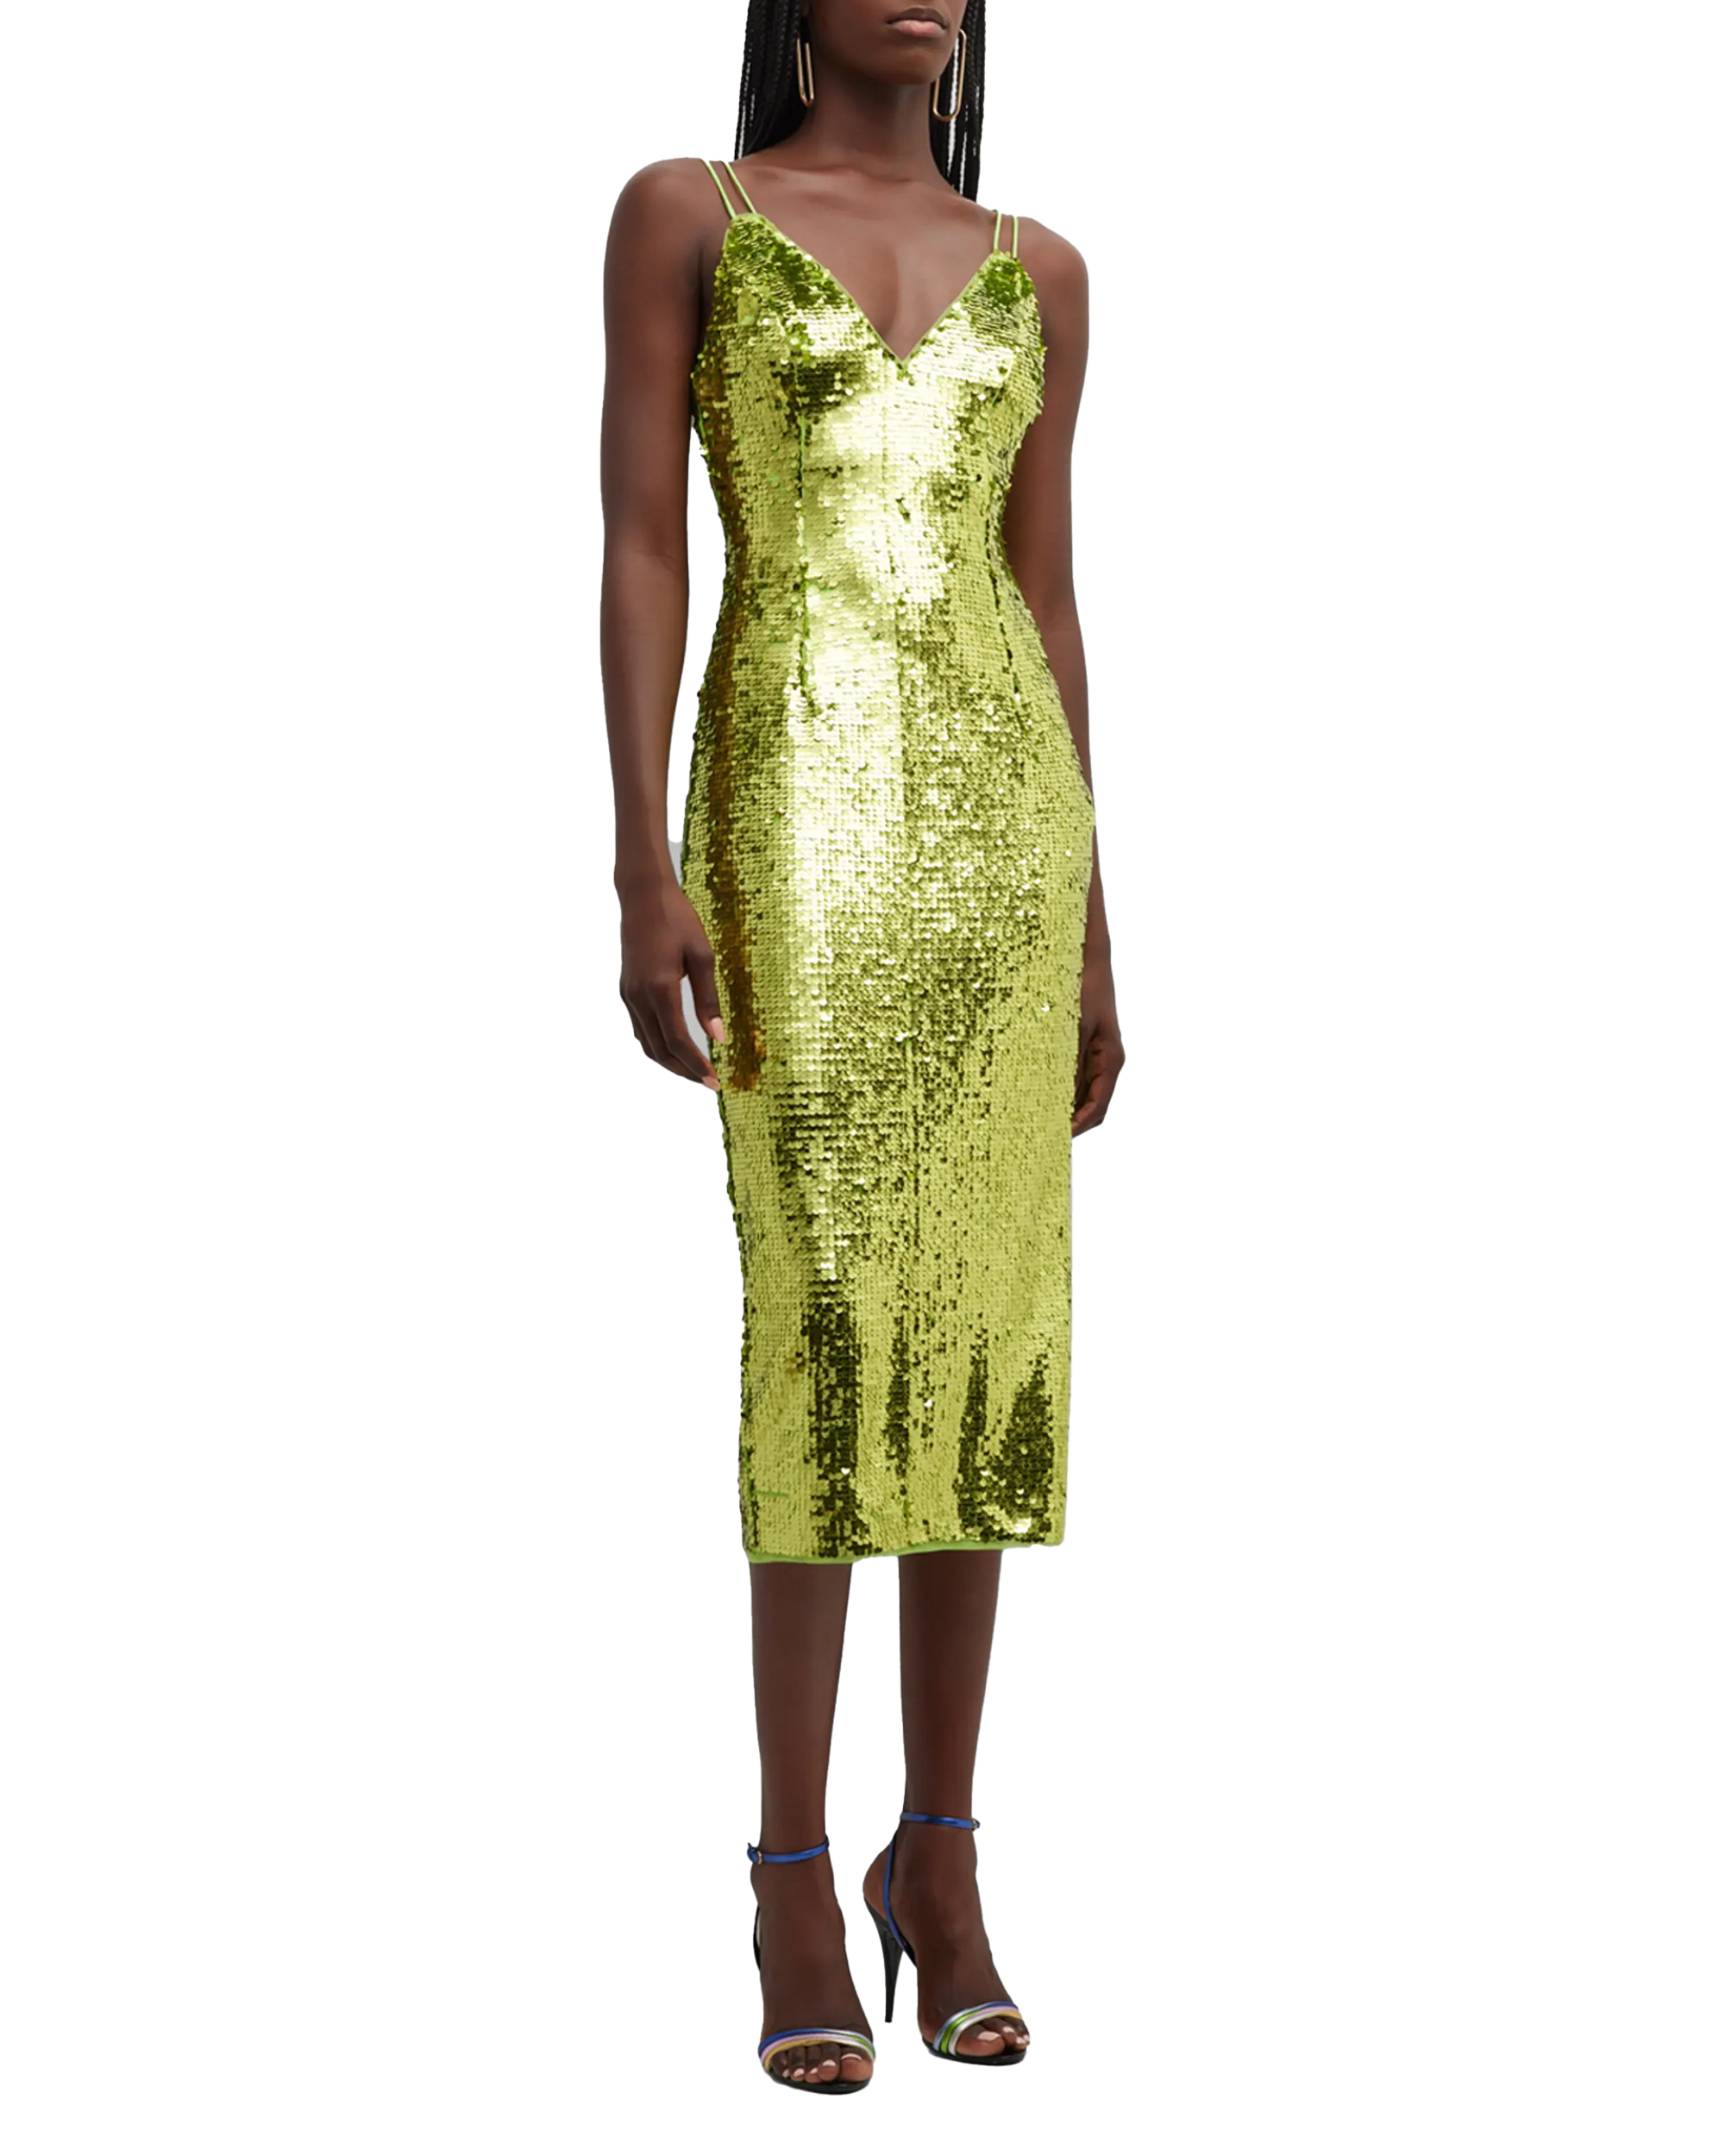 Ein Model in einem glitzernden grünen Kleid